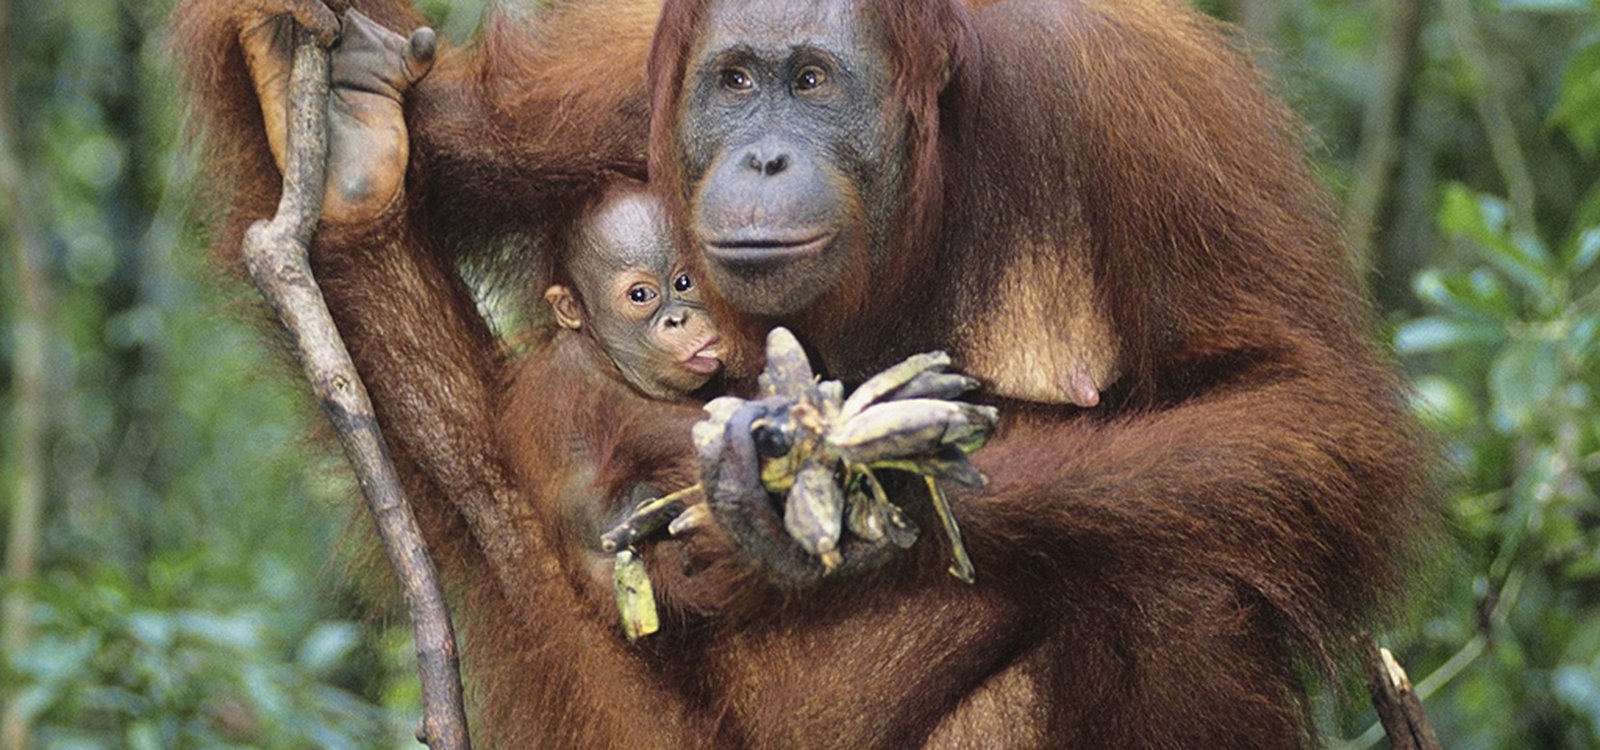 <p>Orangutan, gatunek małpy człekokształtnej, jest spokrewniony z człowiekiem.</p>
